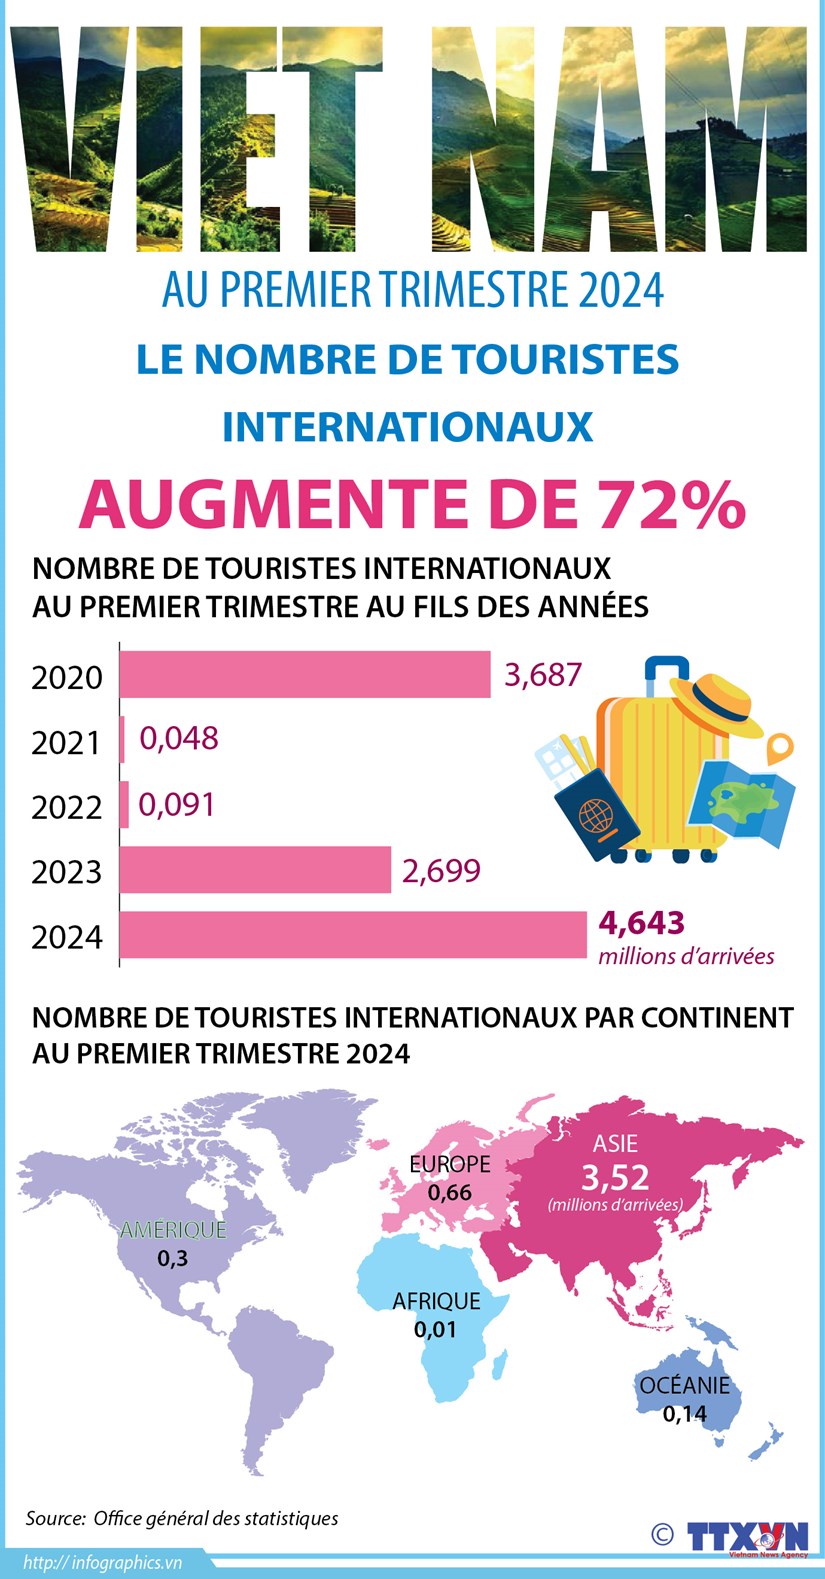 Le nombre de touristes internationaux augmente de 72% au premier trimestre hinh anh 1